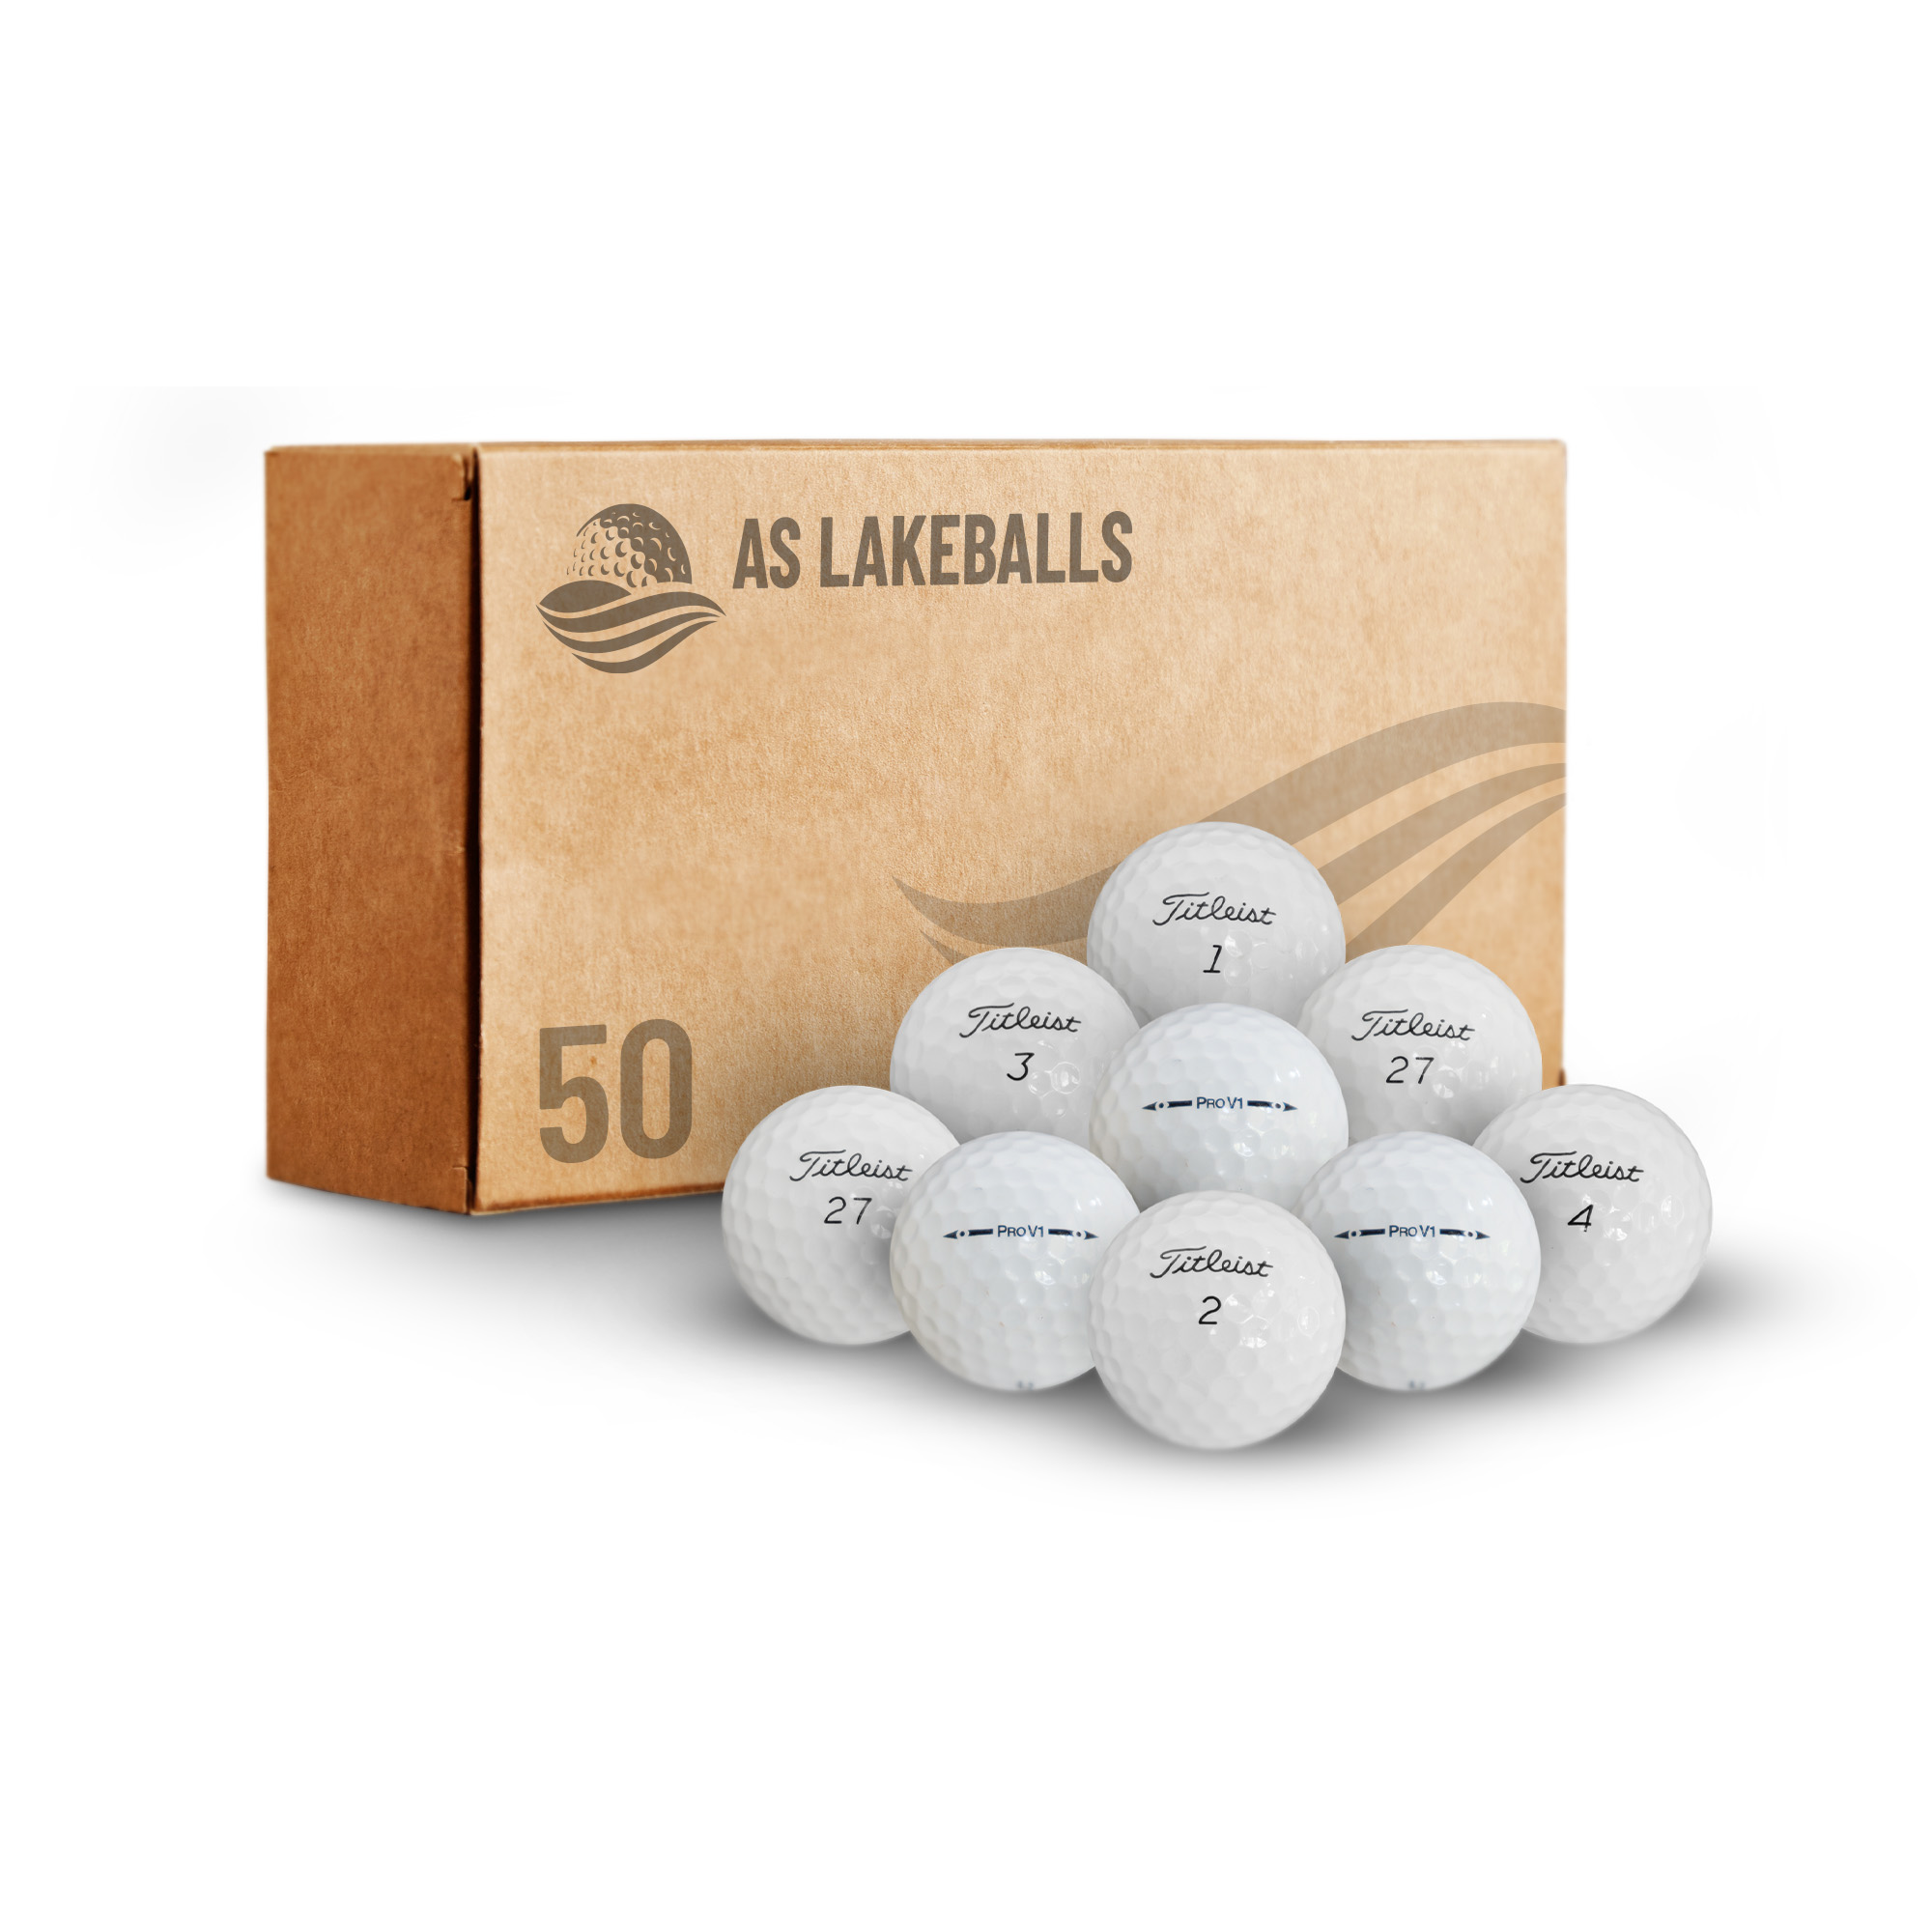 50 Stück Titleist Pro V1 AA-AAA Lakeballs bei AS Lakeballs günstig kaufen